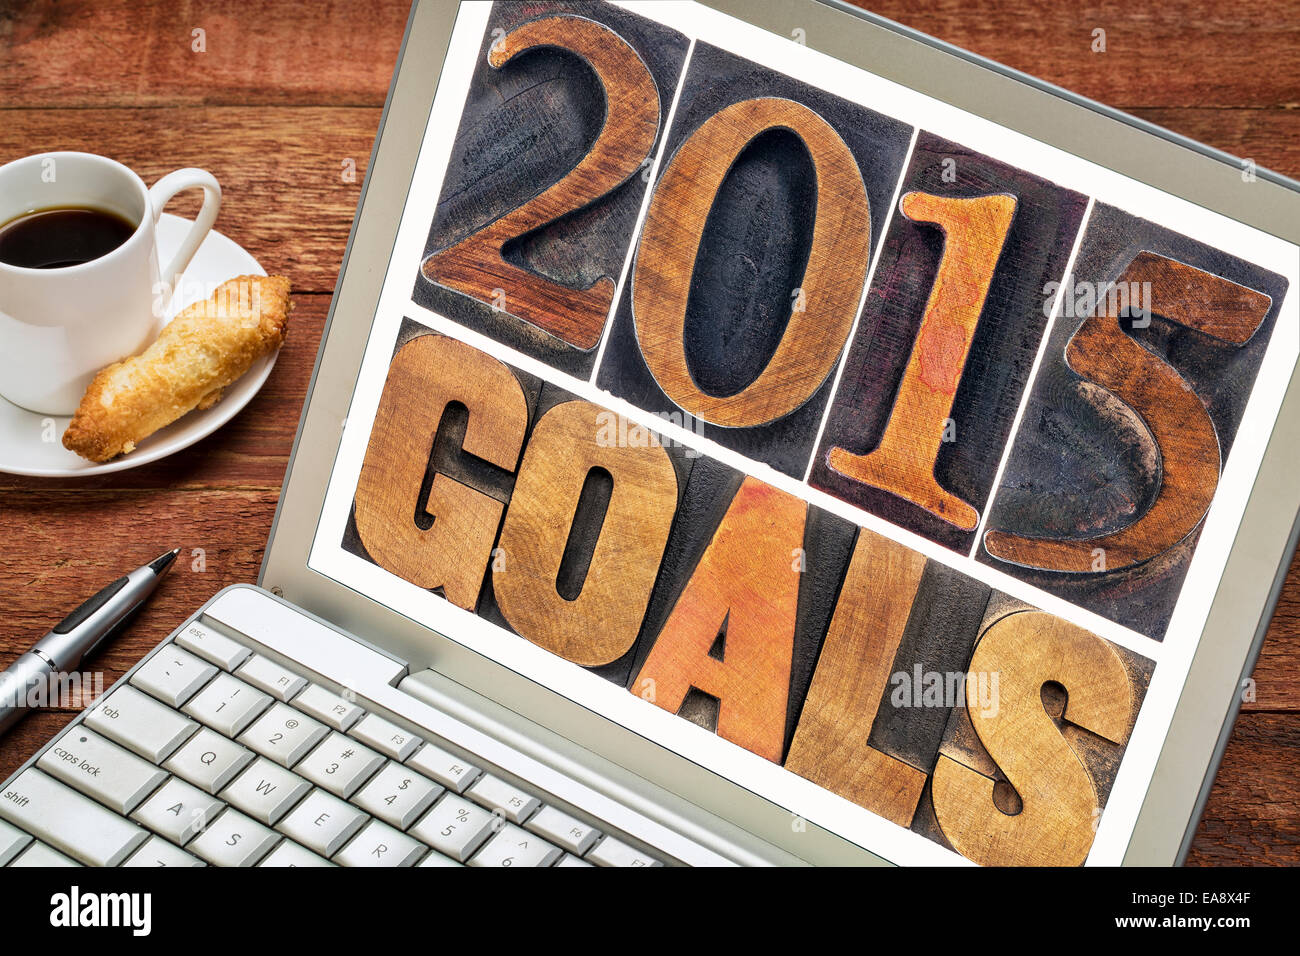 2015-Ziele - Silvester Auflösung Konzept - Text im Buchdruck Holzart auf einem Laptop mit einer Tasse Kaffee Stockfoto